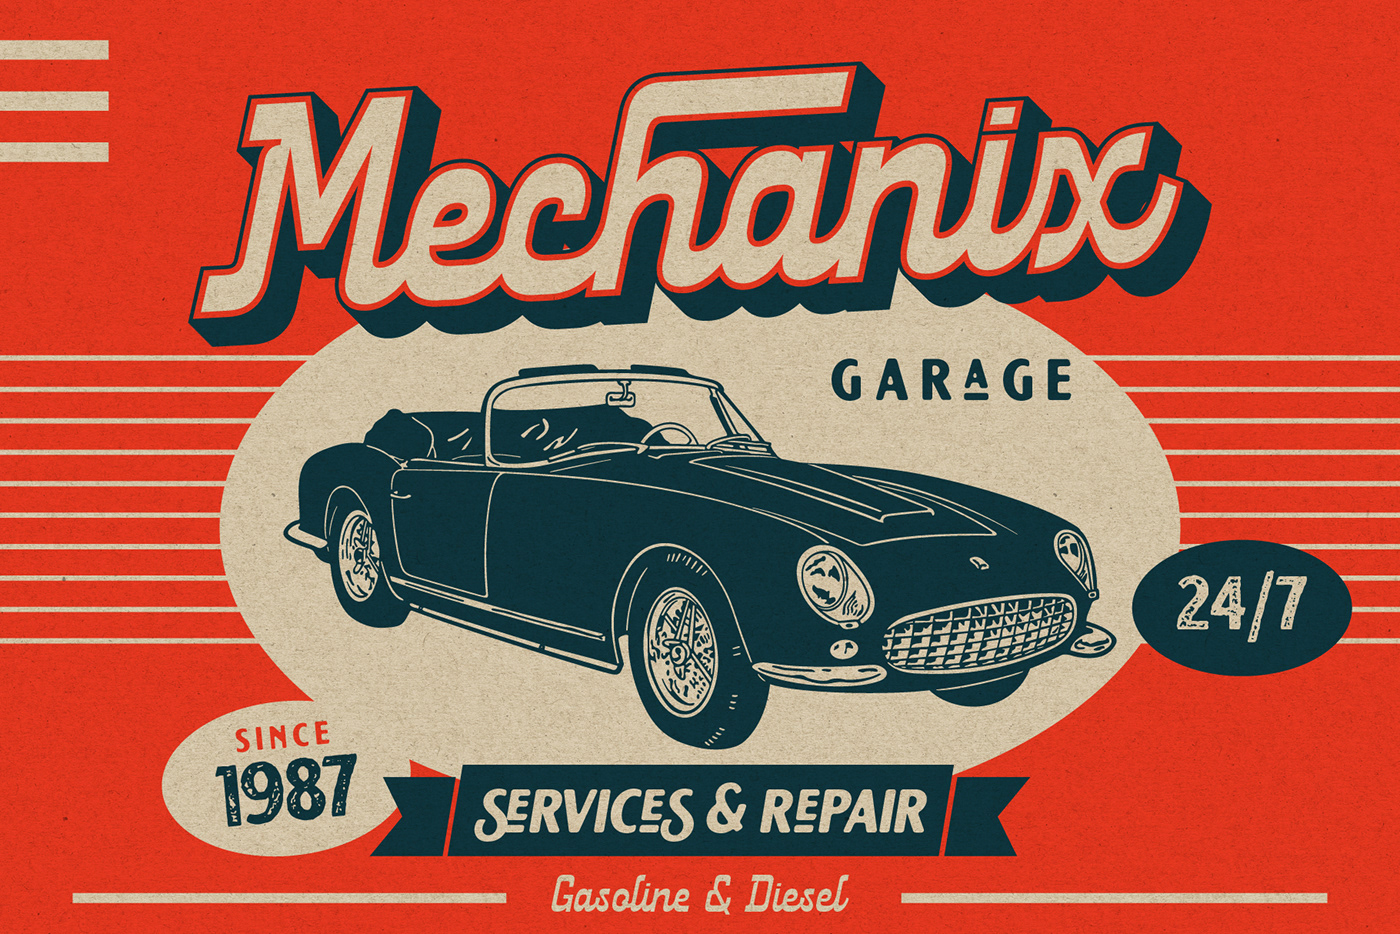 fonts motorcycle retro font retro script classic car vintage font Display automobile automotive   Automotive design